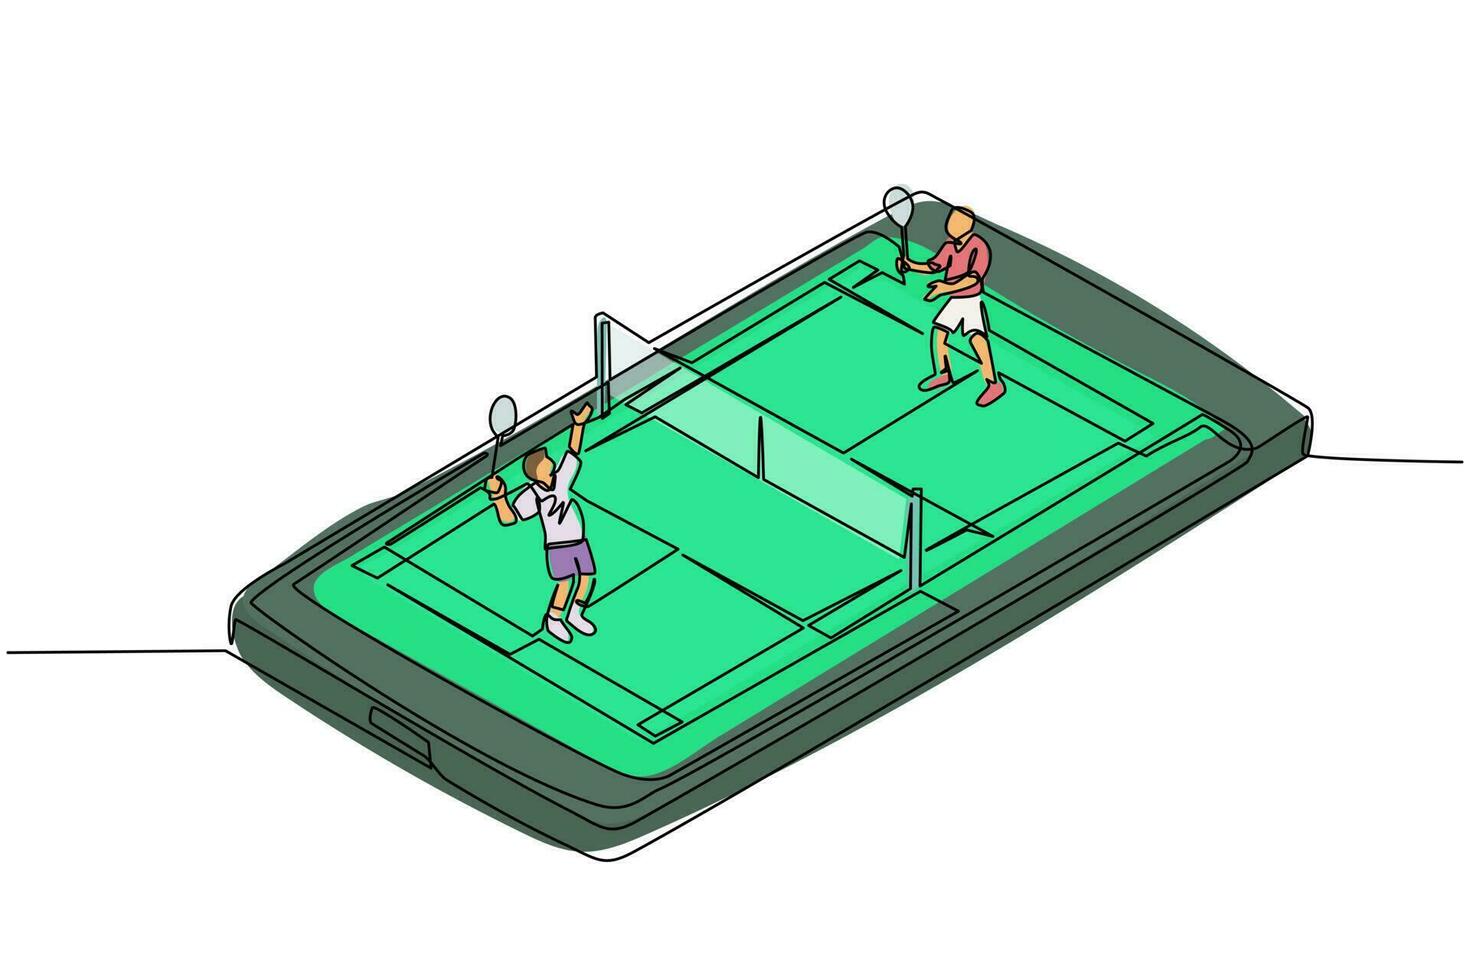 en rad ritad badmintonbana med två spelare som slår fjäderbollen med sina racketar på smartphoneskärmen. professionell idrottstävling. mobil app. kontinuerlig linje rita design vektor